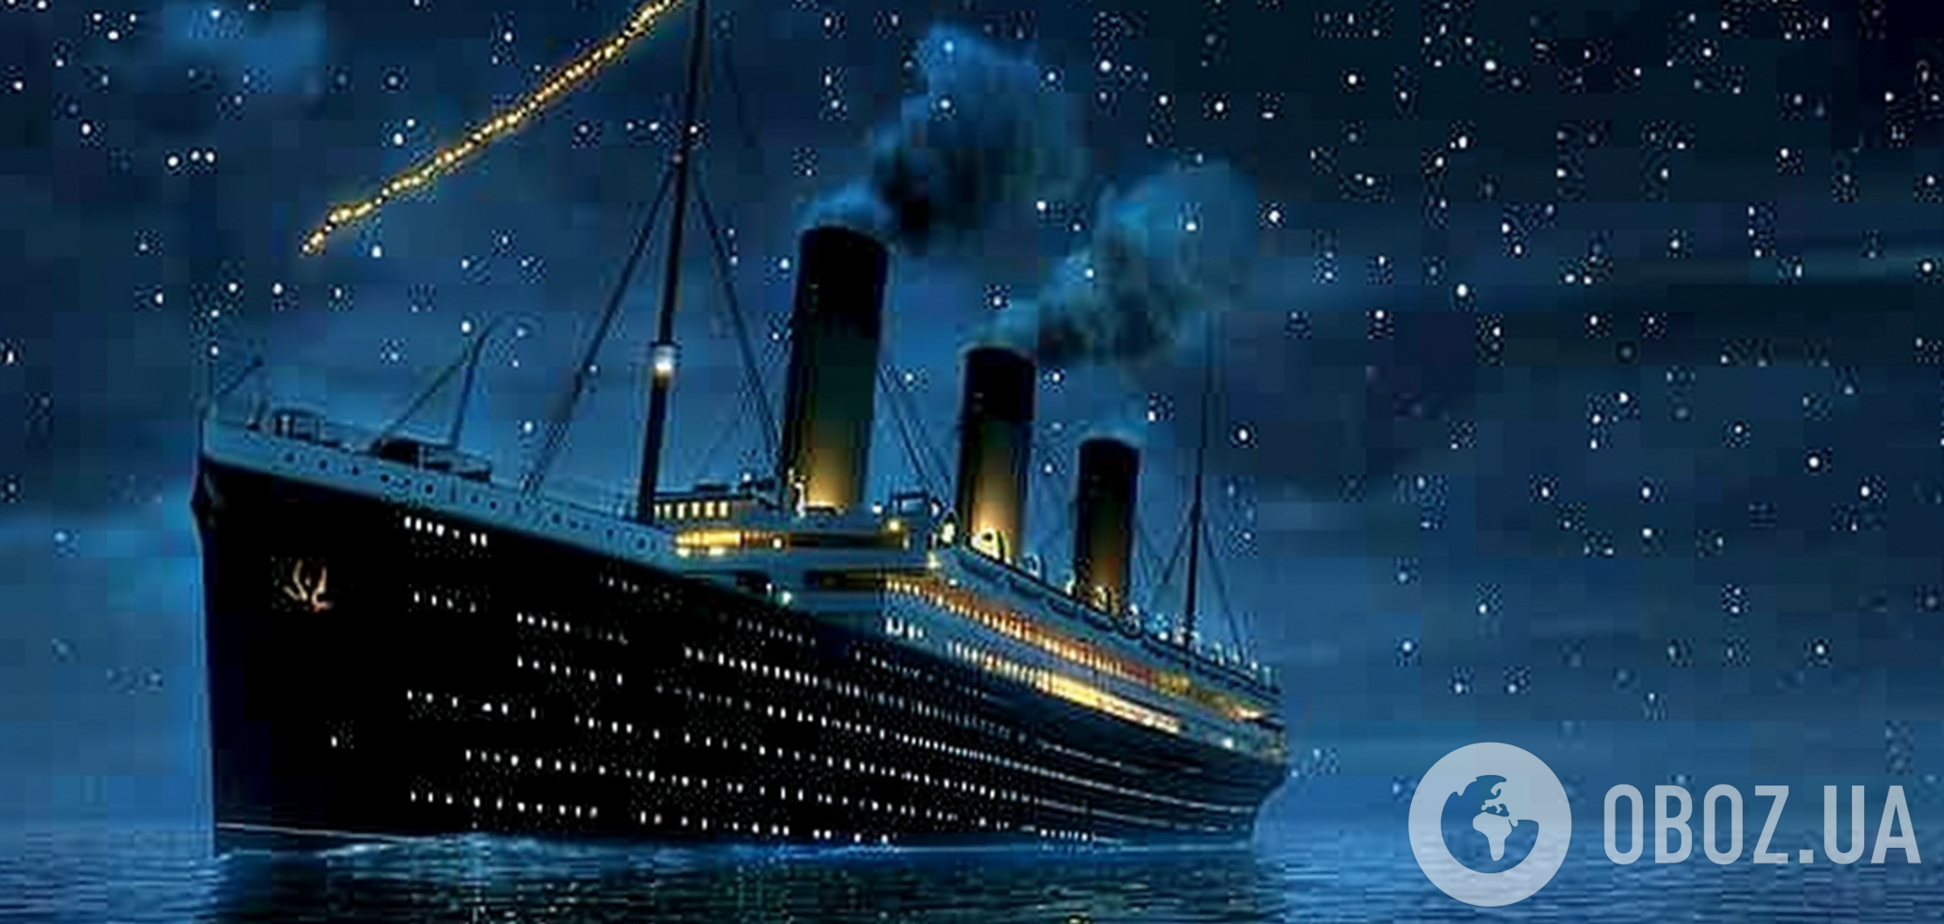 Катастрофа 'Титаніка' могла бути набагато страшнішою: відеосимуляція налякала мережу